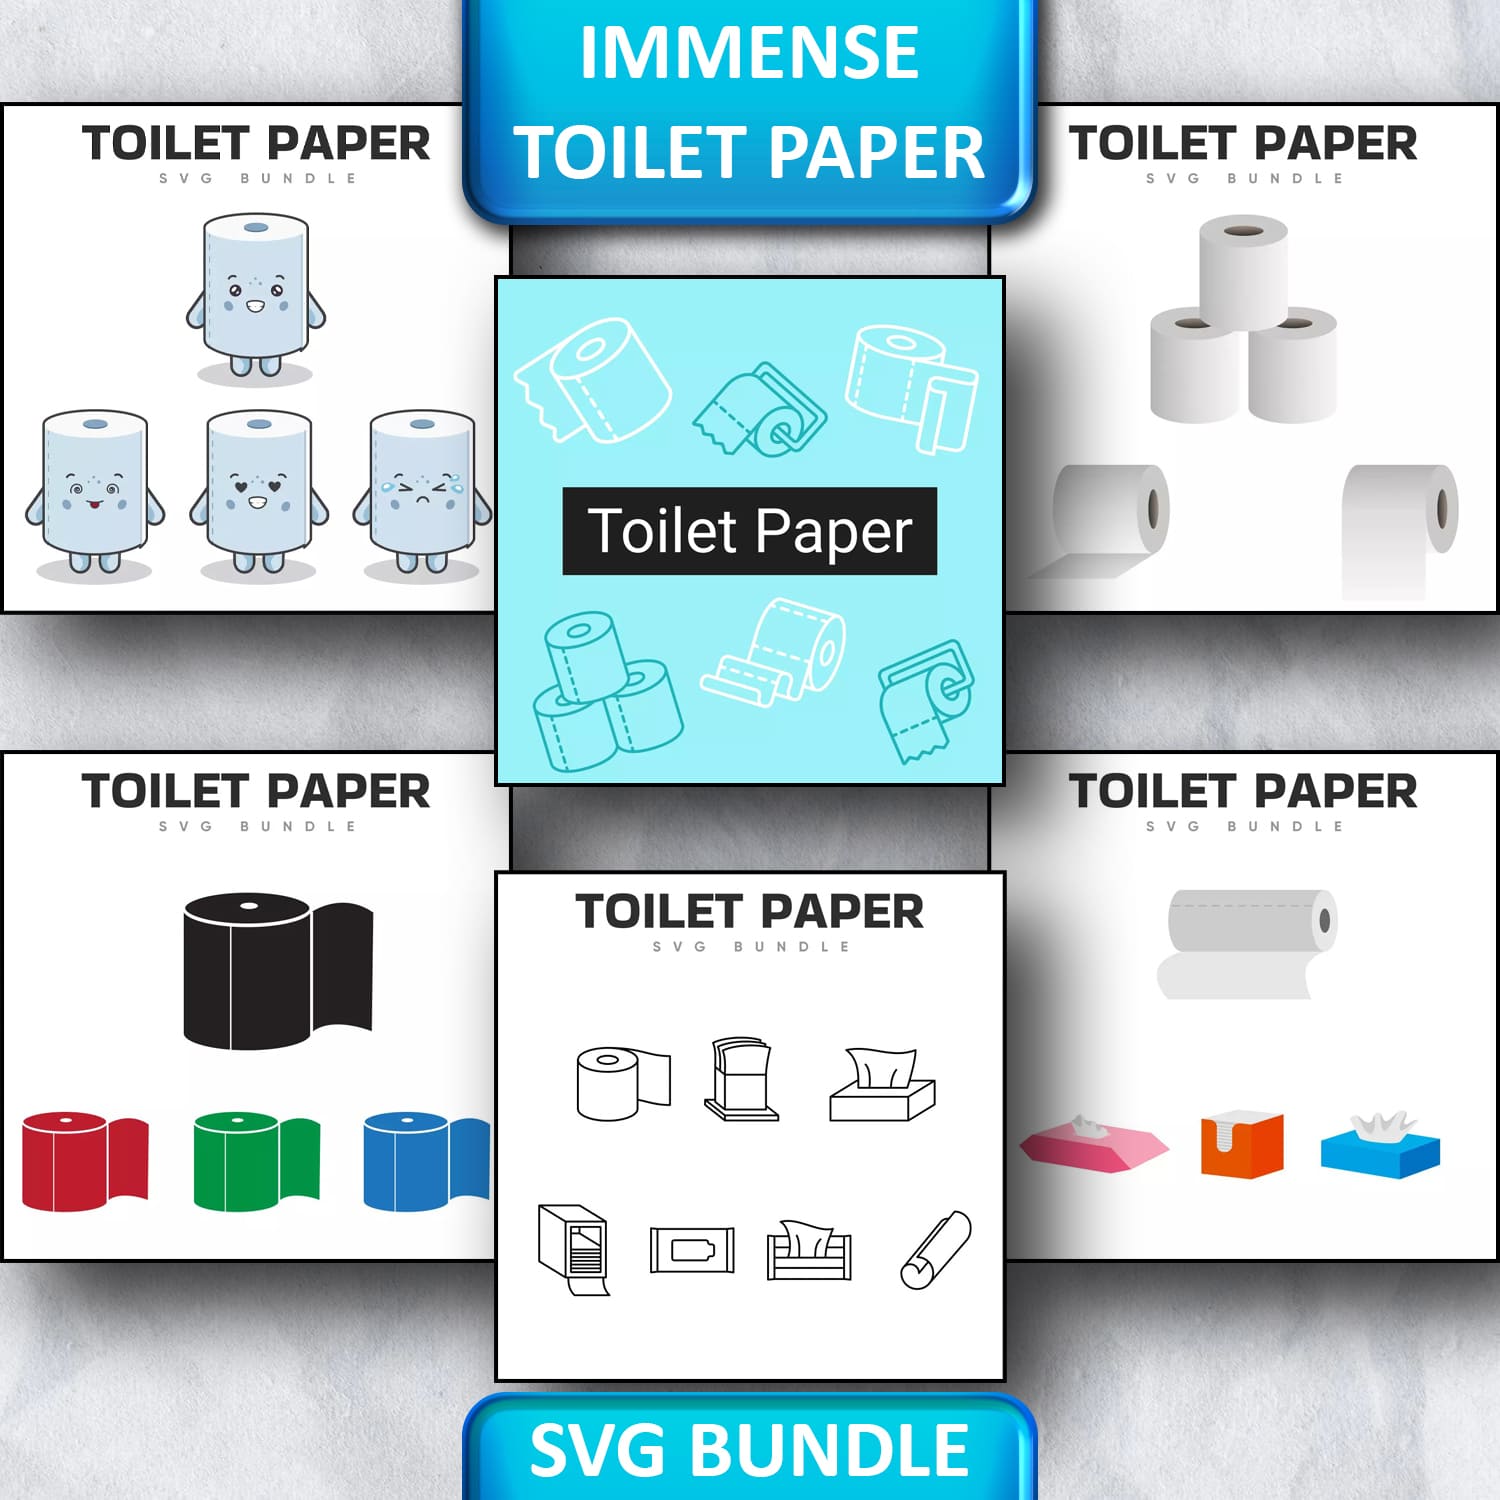 Immense Toilet Paper SVG Bundle 1500 1500 1.